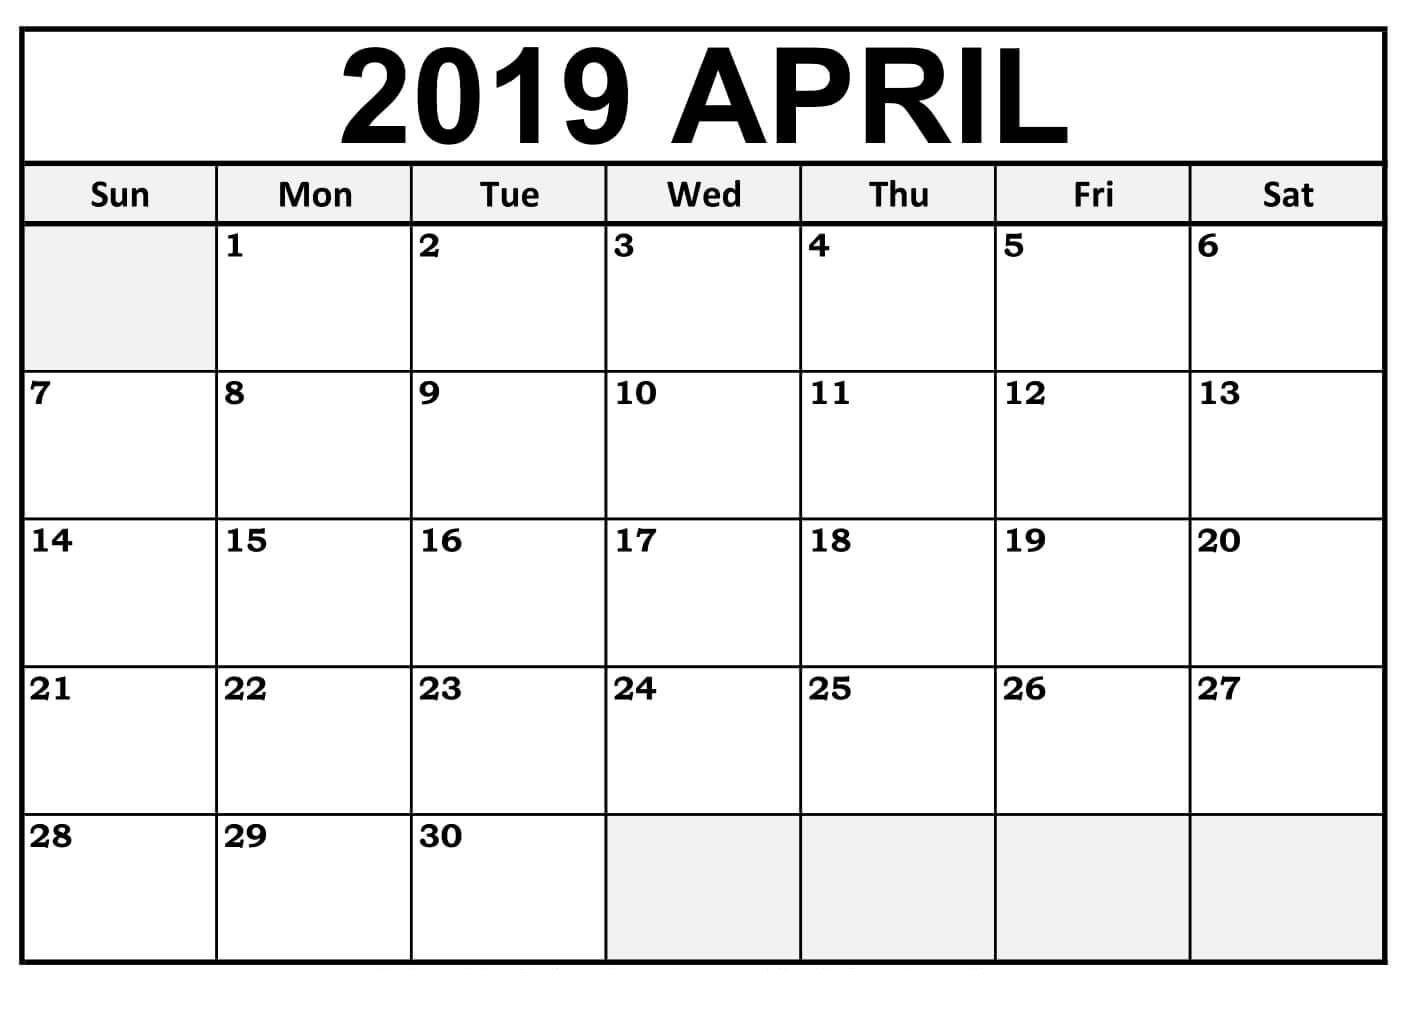 Lunar Calendar For April 2019 Printable Pdf Blank Download